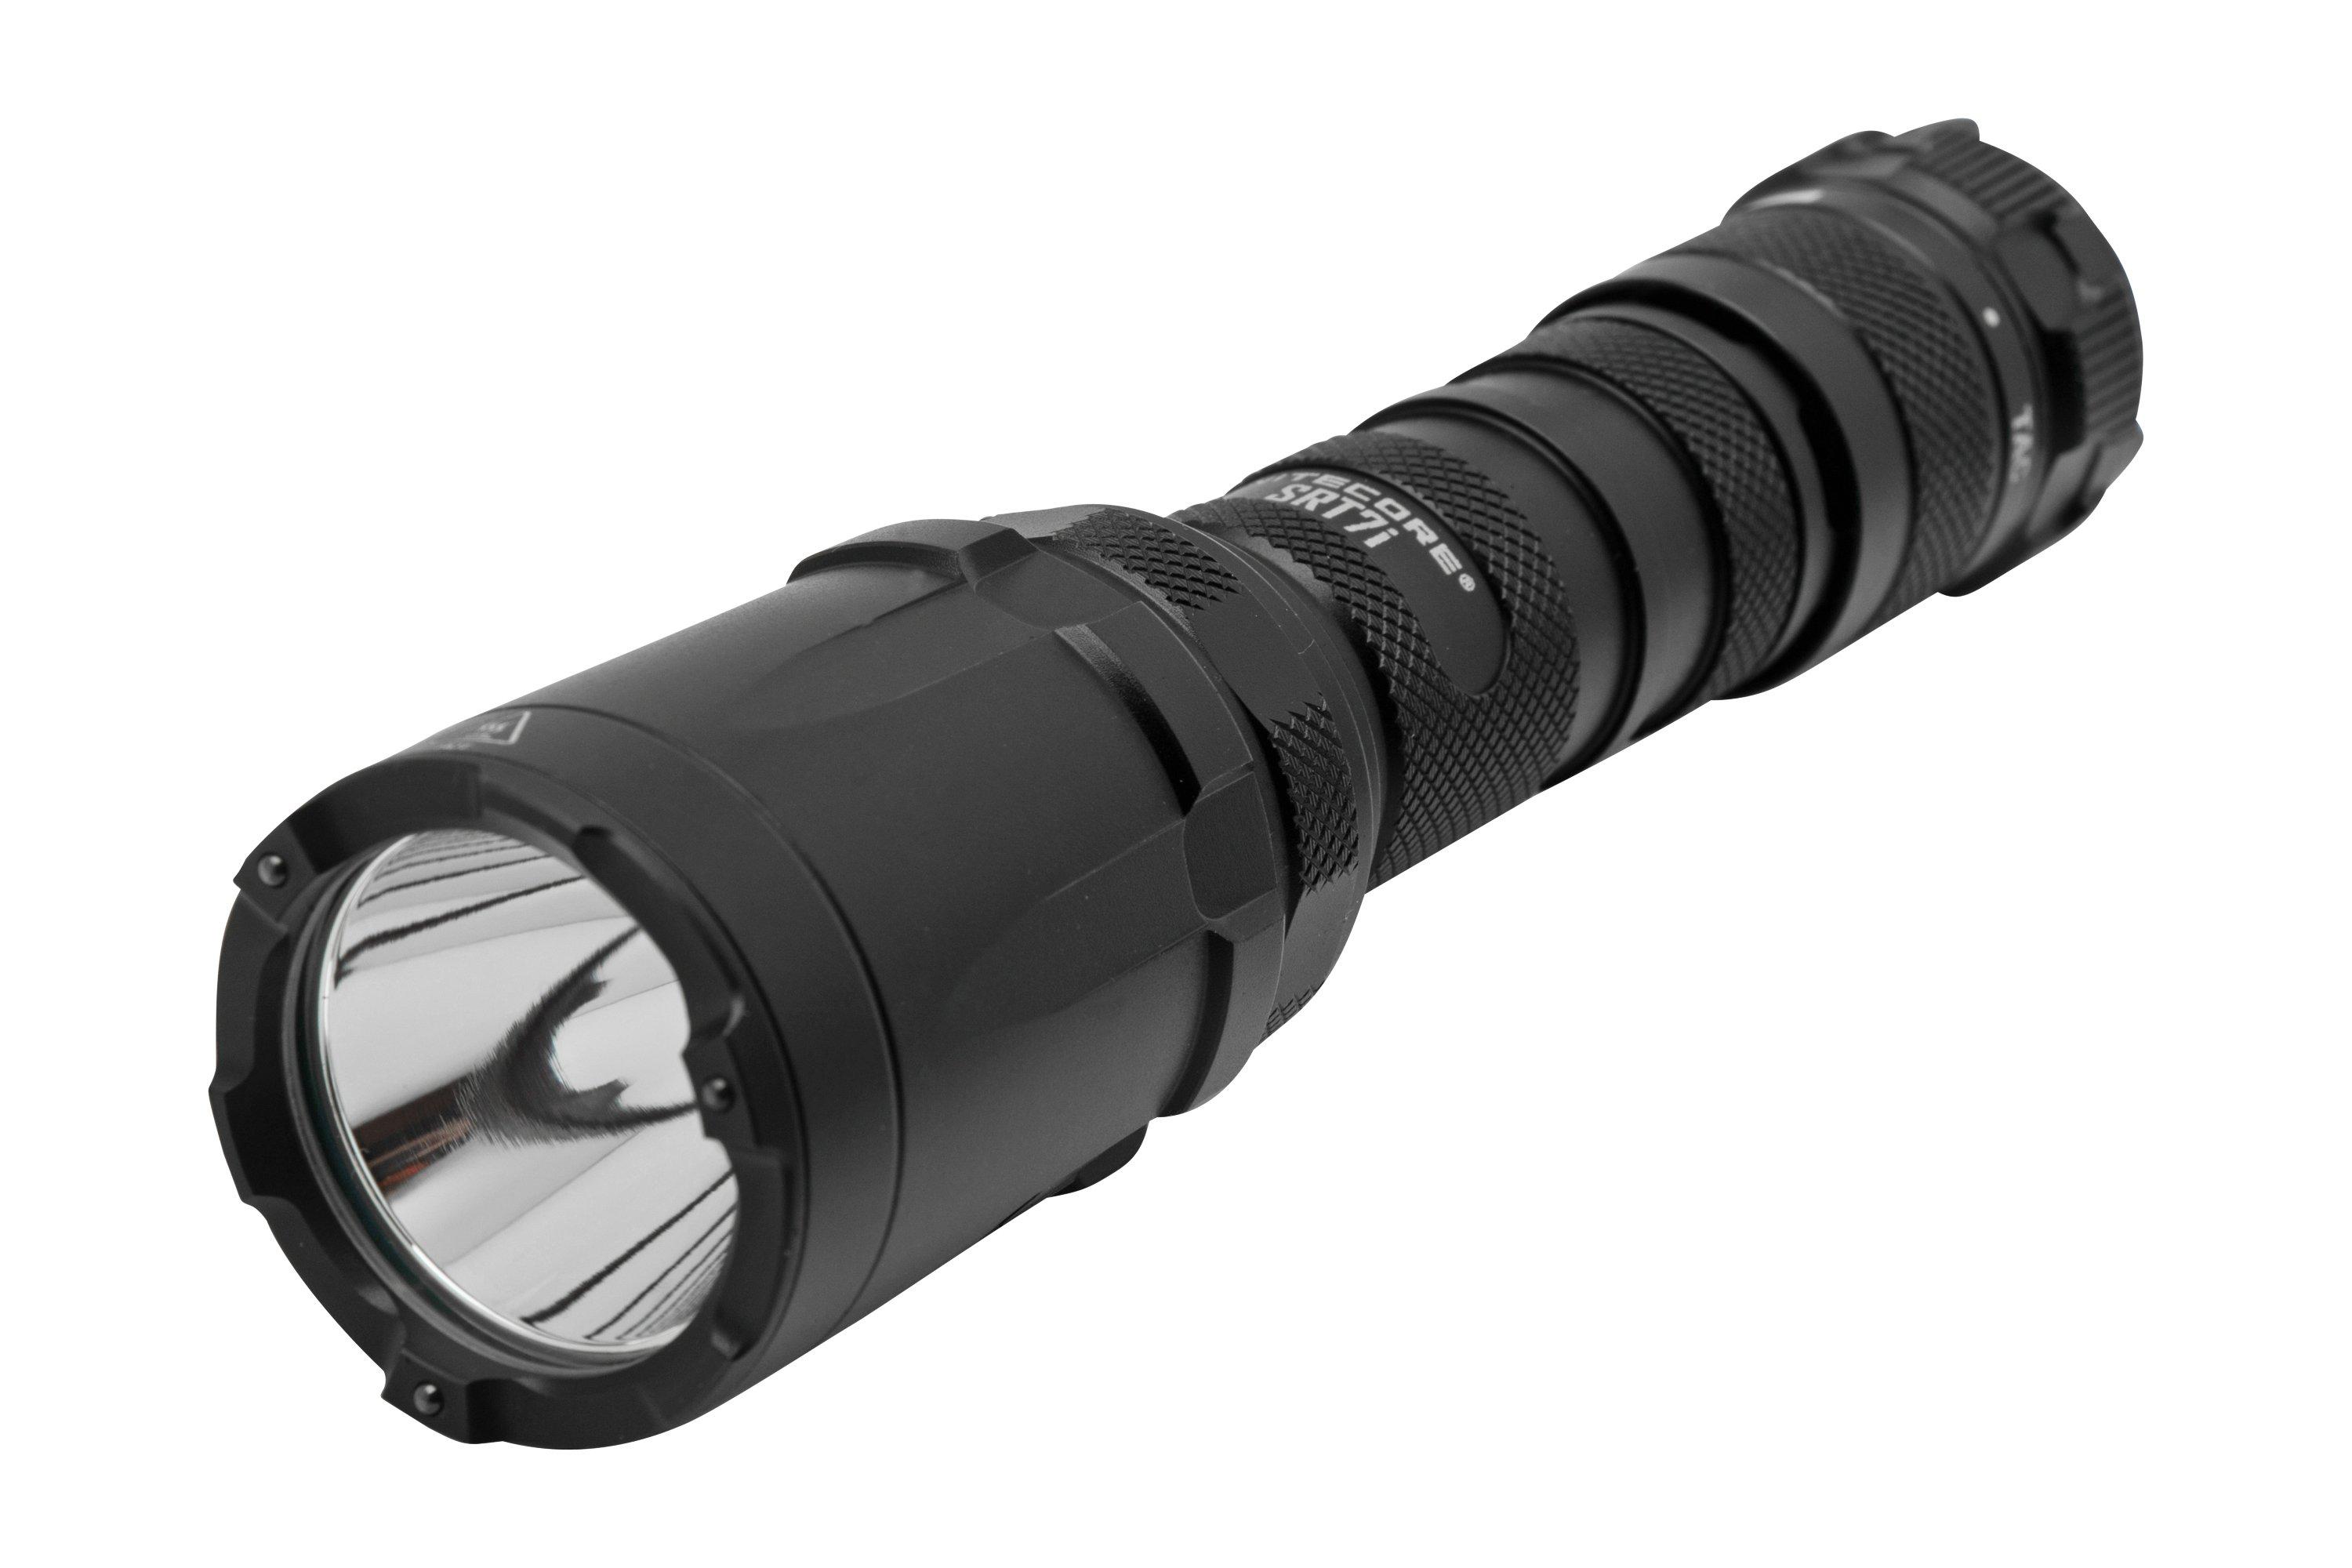 Acheter NiteCore SRT7i lampe de poche tactique - 3000 lumens-Noir?